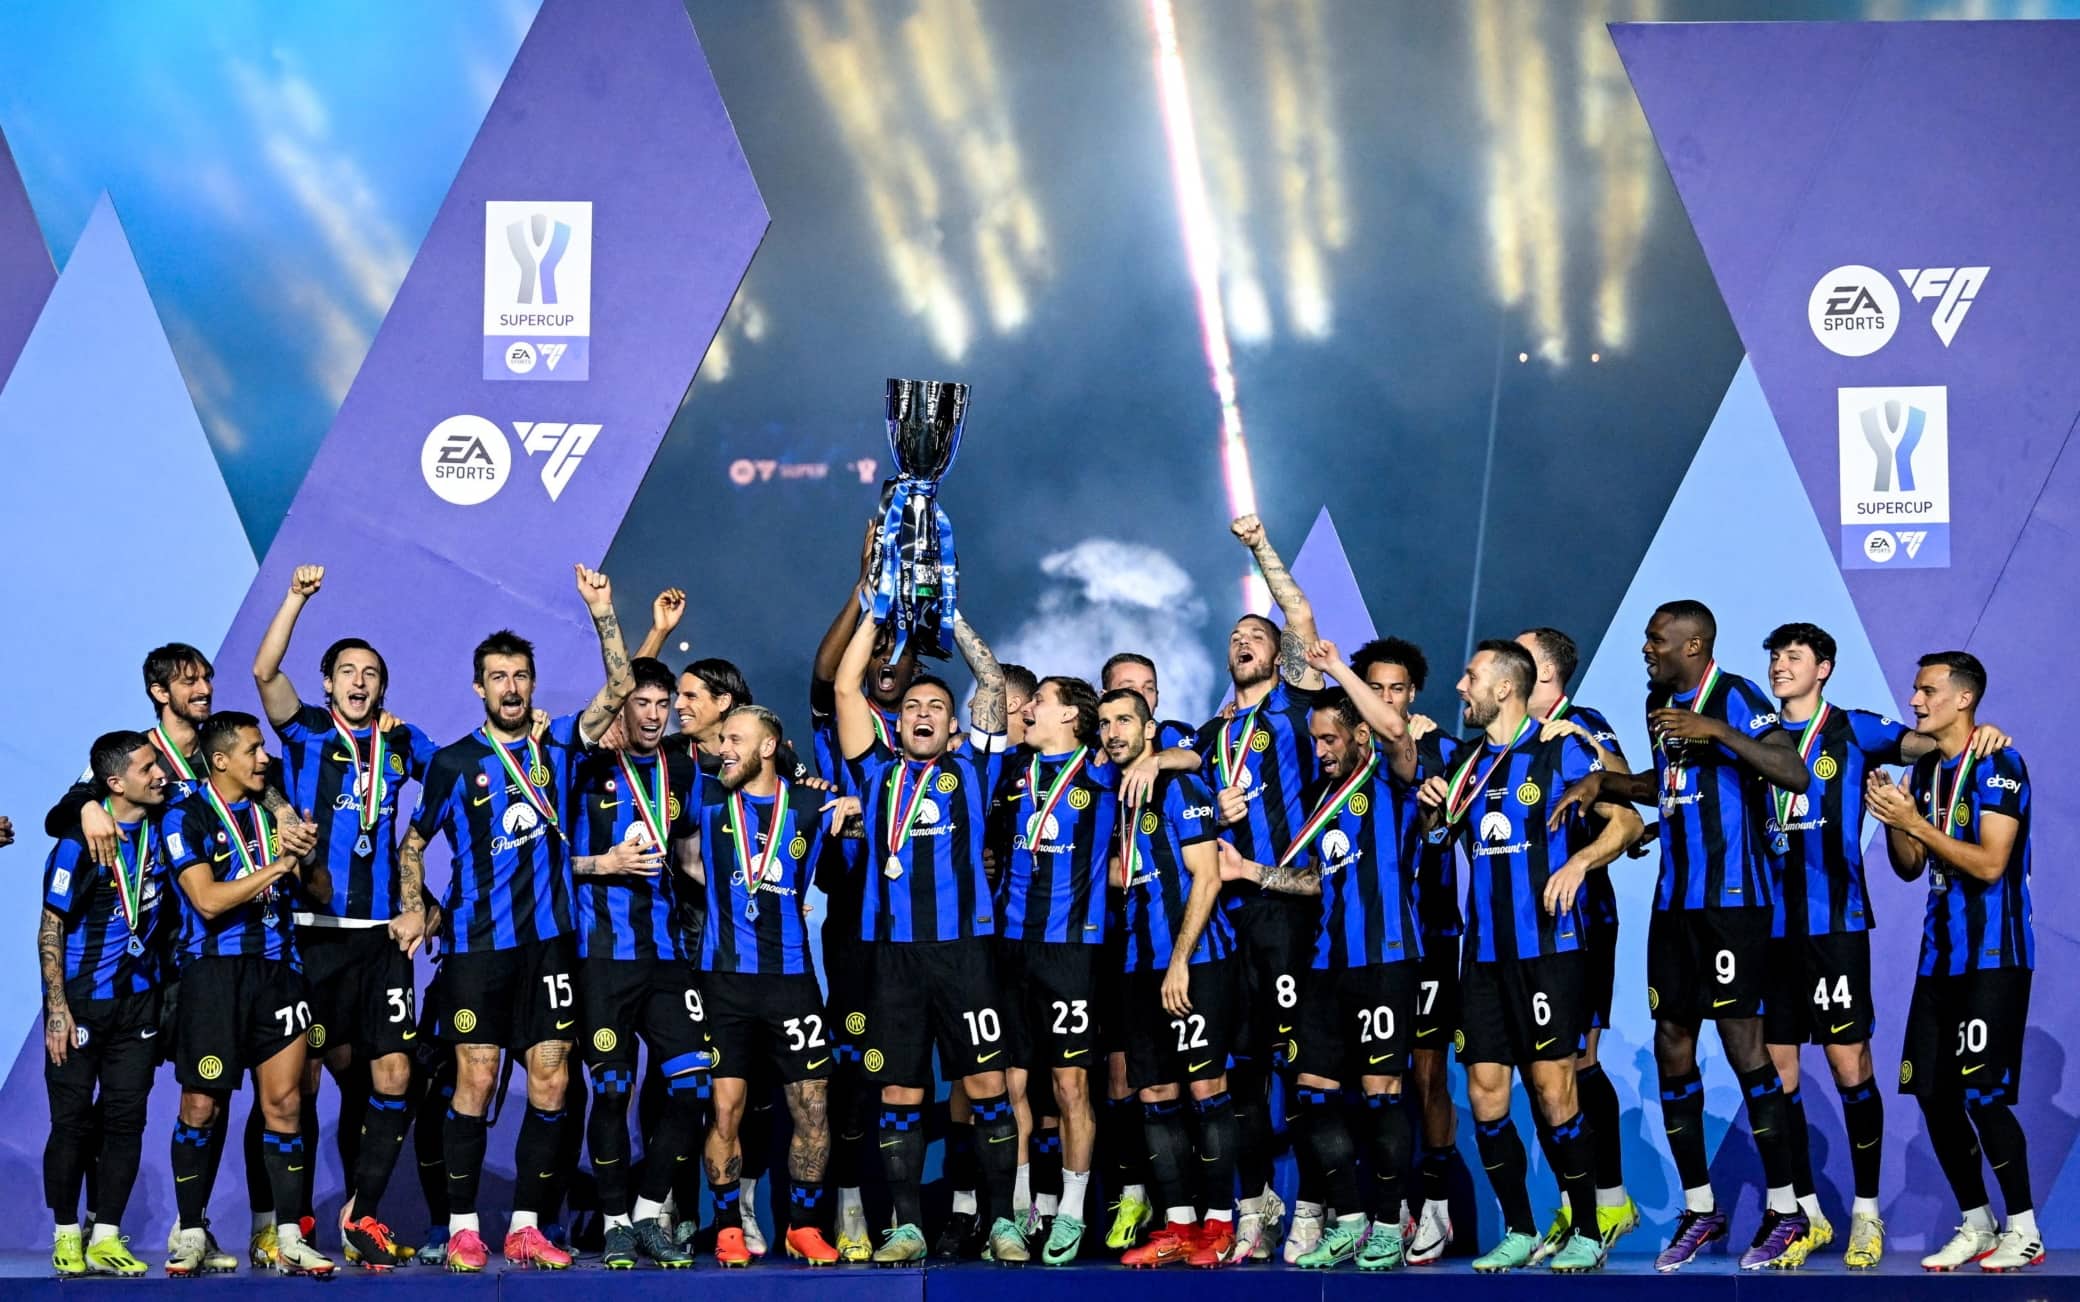 Supercoppa all'Inter